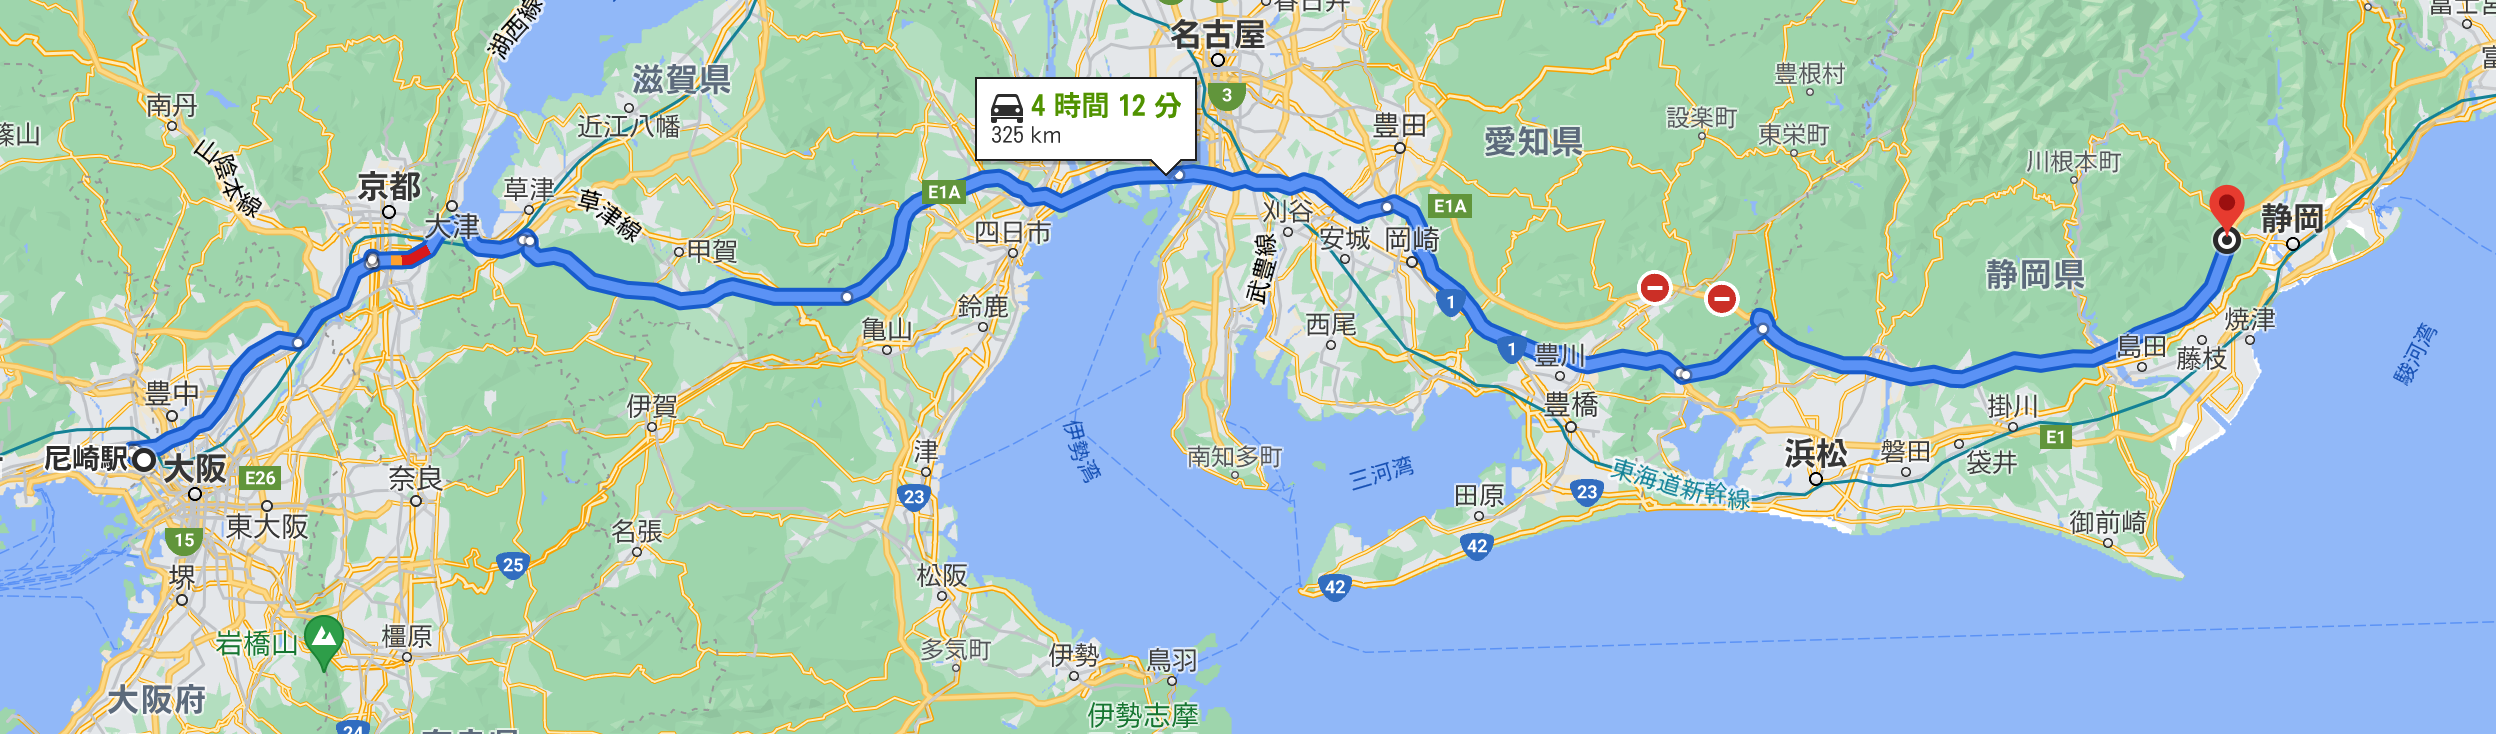 いざ福島へ 車中泊旅 急がずにのんびり向かっていこう 1 もーりぃファミリーのハイエースで行く車中泊旅とキャンプライフ